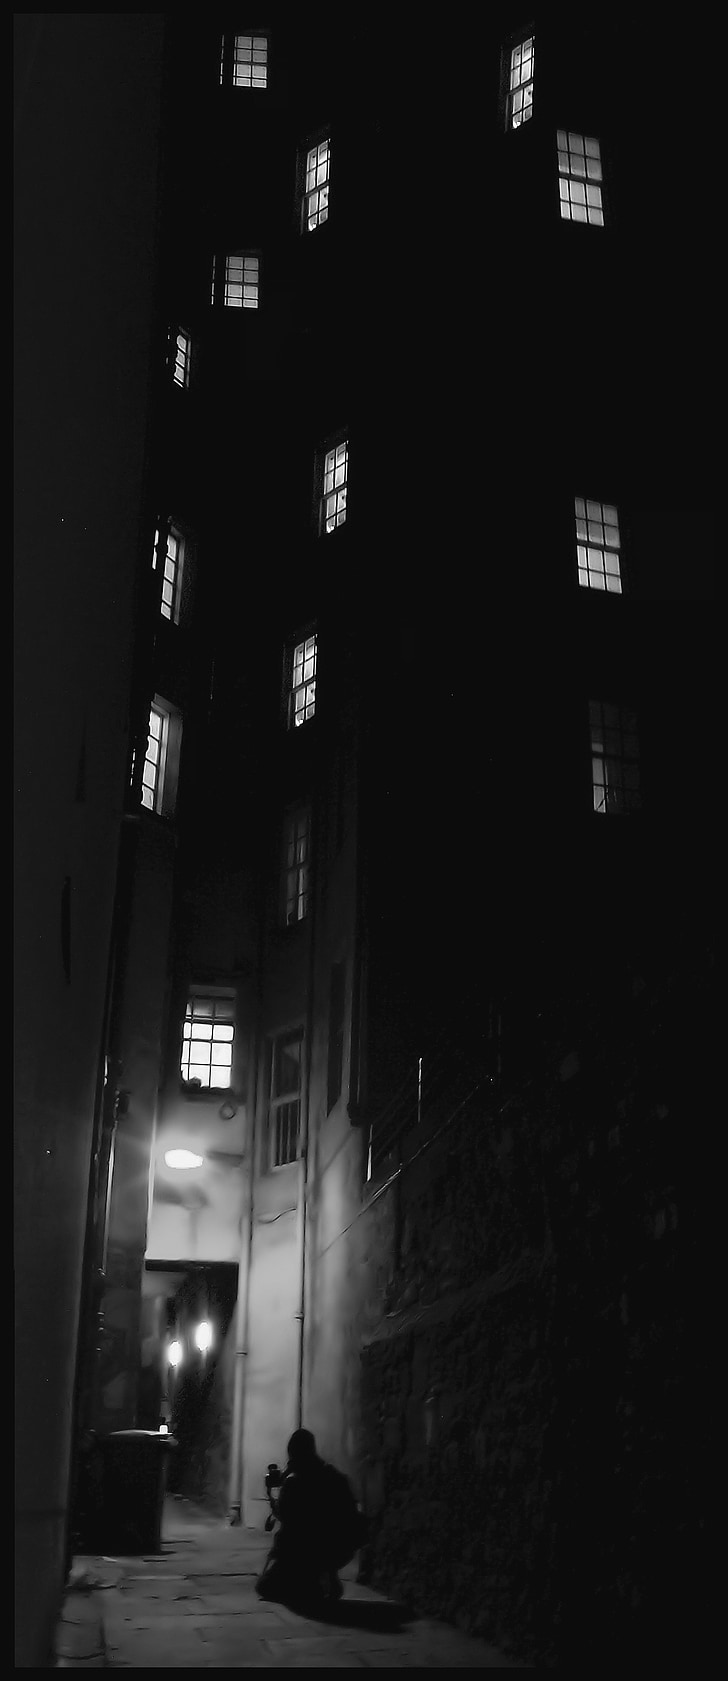 Lane, à noite, arquitetura, cena urbana, preto e branco, cidade de Nova york, escuro